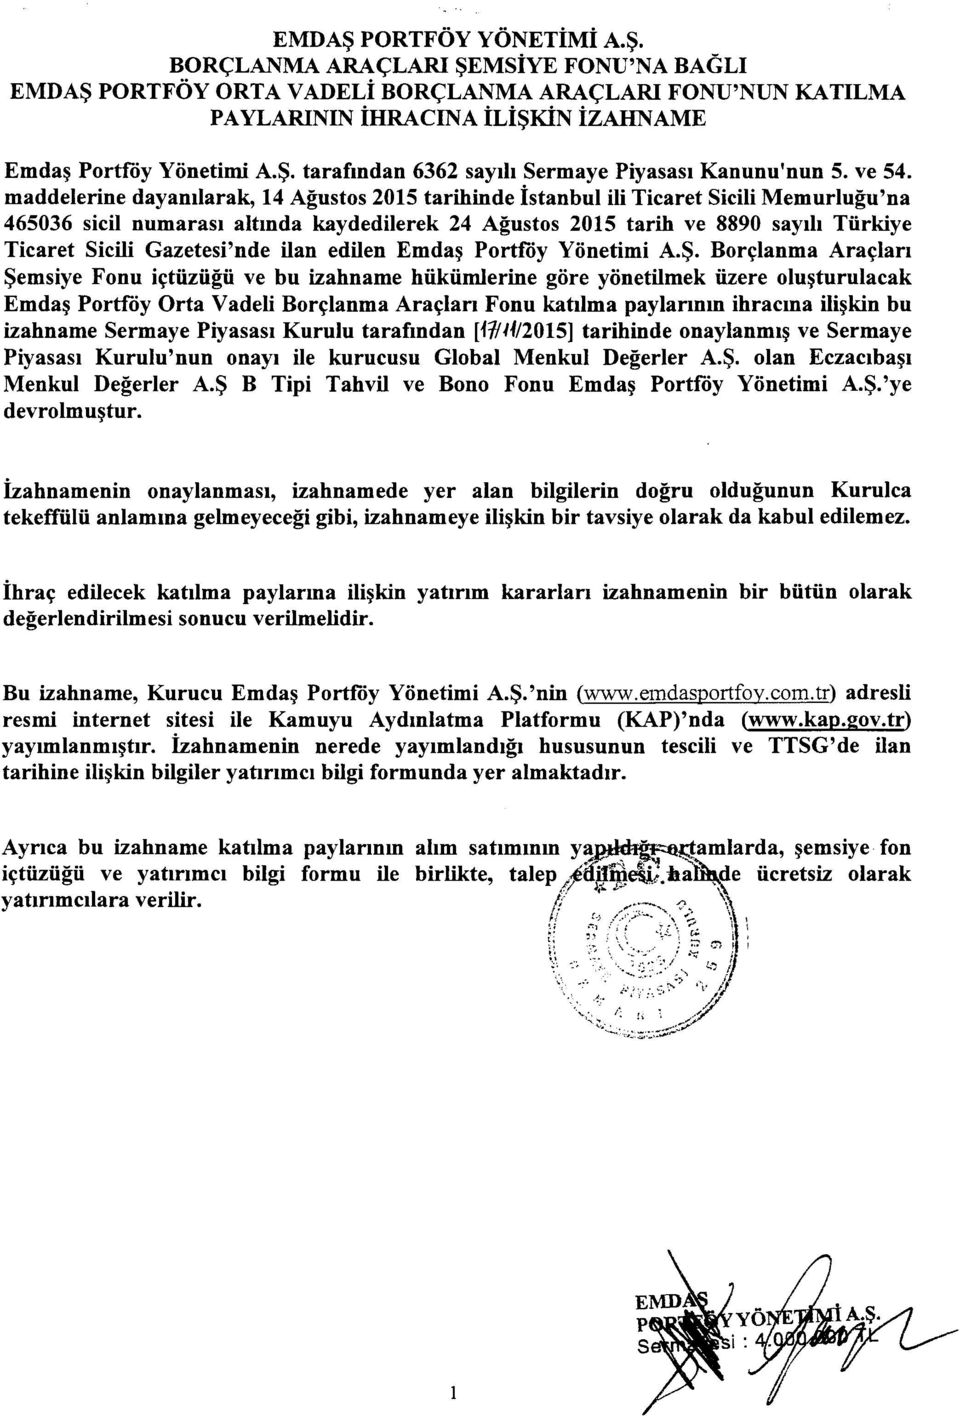 maddelerine dayamlarak, 14 Agustos 2015 tarihinde istanbul iii Ticaret Sicili Memurlugu'na 465036 sicil numarasi altmda kaydedilerek 24 Agustos 2015 tarih ve 8890 sayih Tiirkiye Ticaret Sicili